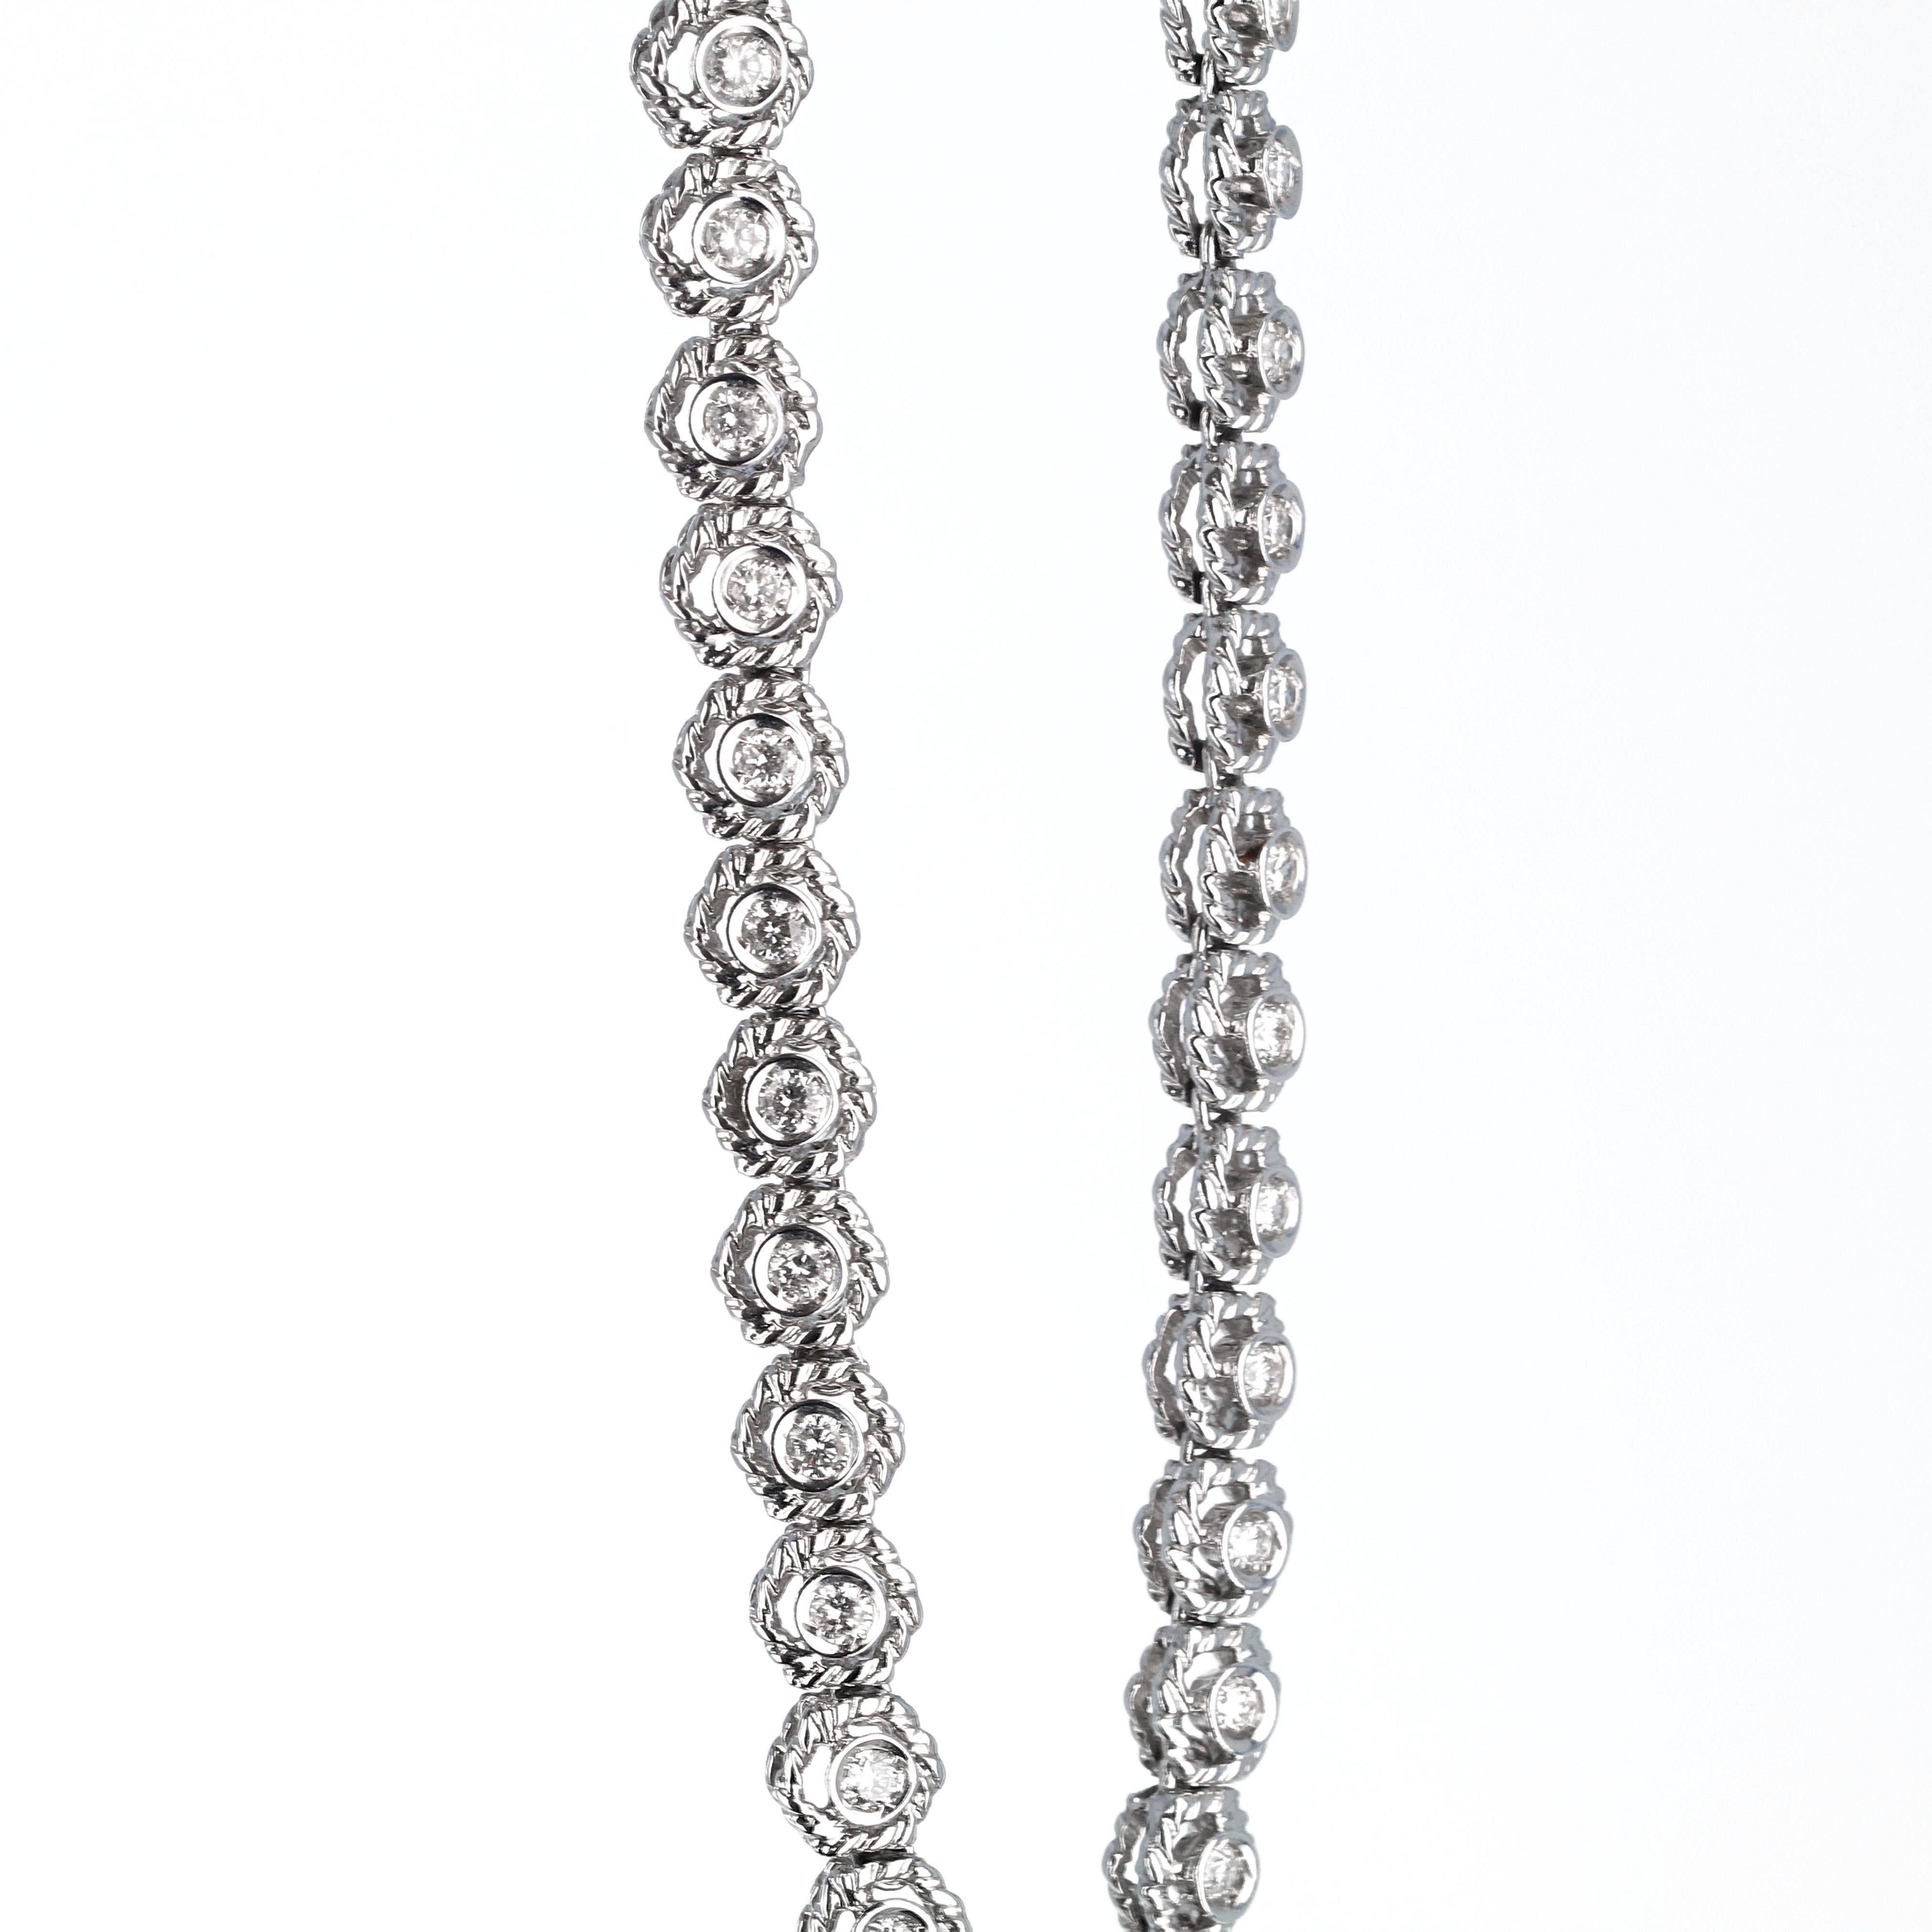 Handgefertigtes Diamant-Tennisarmband von Elizabeth Taylor Collection'S, House of Diamonds. Gefertigt aus 18 Karat Weißgold und auf der Rückseite signiert 